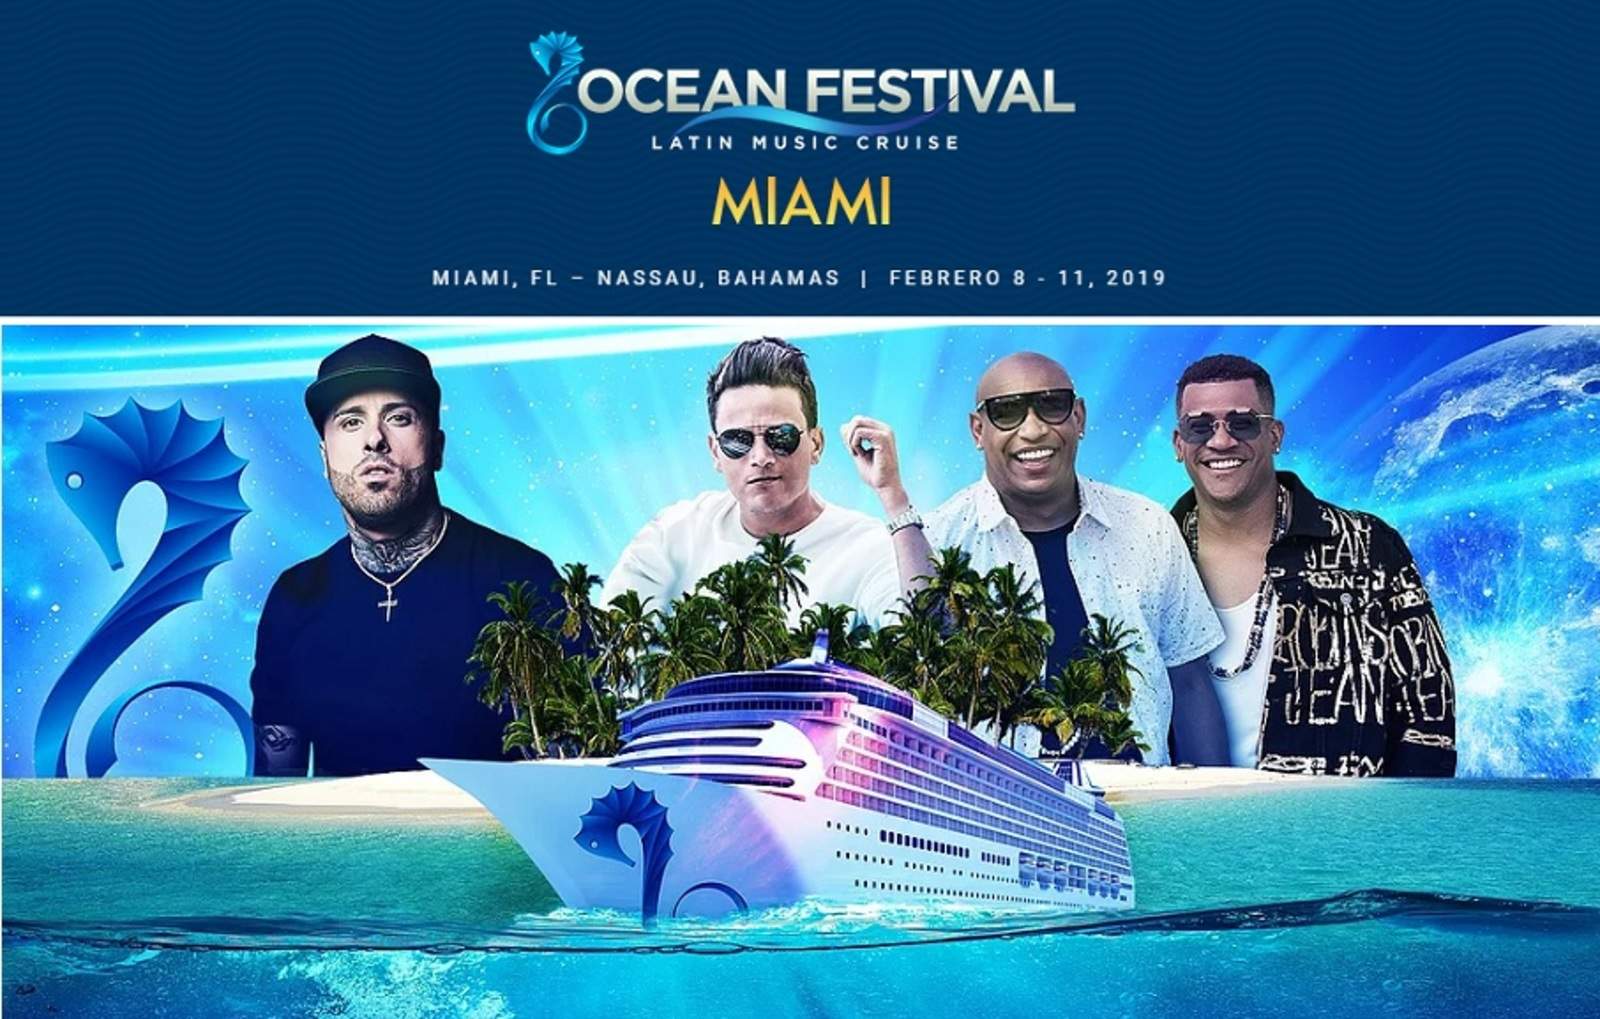 Festival. Nicky Jam,Gente de Zona y Silvestre Dangond integran el cartel del Ocean Festival. (ESPECIAL)